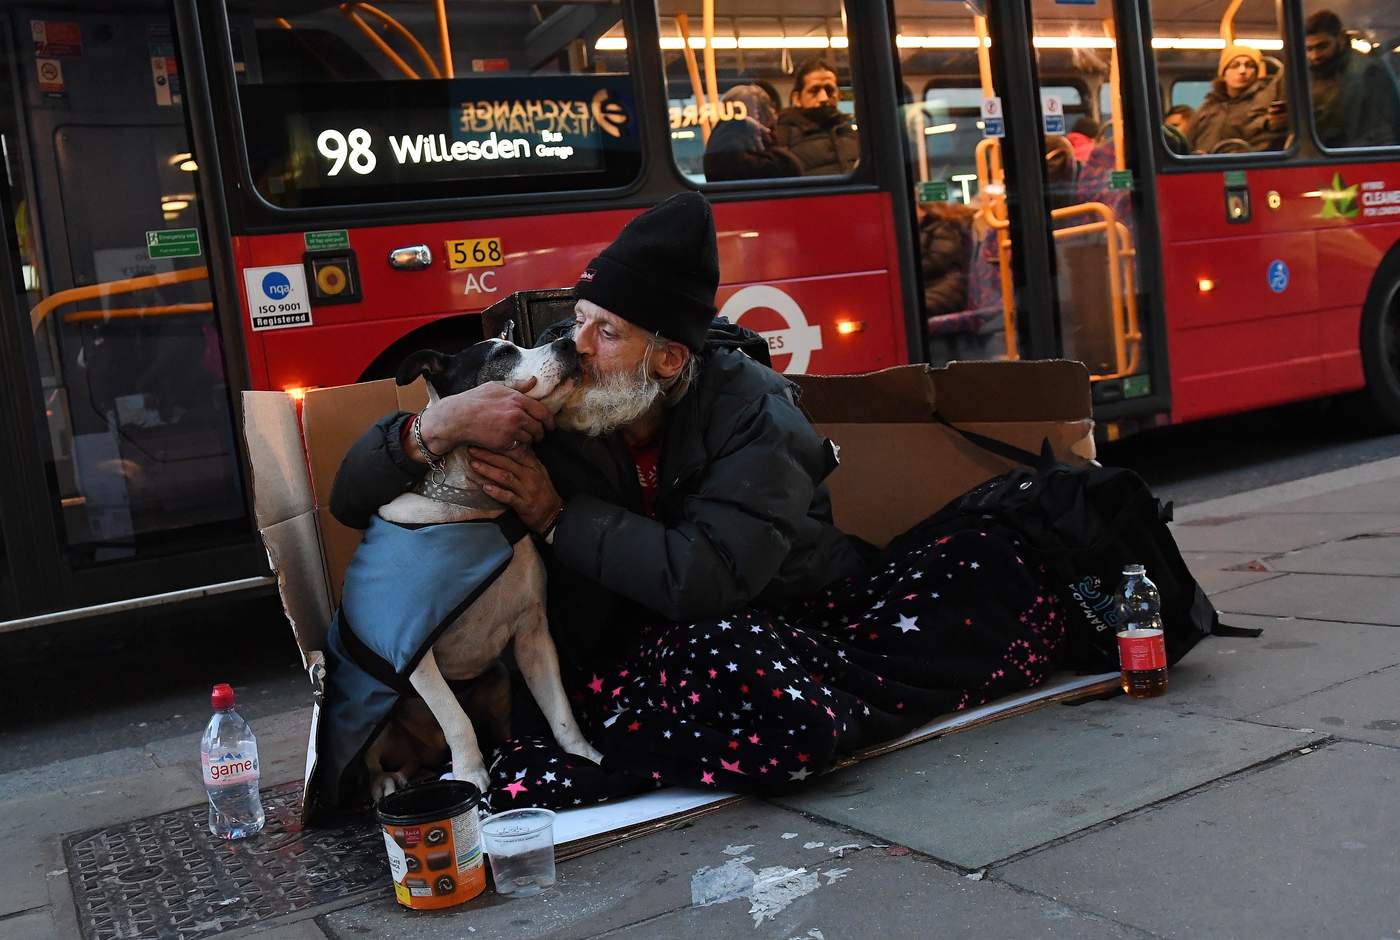 Reino Unido enfrenta crisis de gente sin hogar, según ONG. Noticias en tiempo real